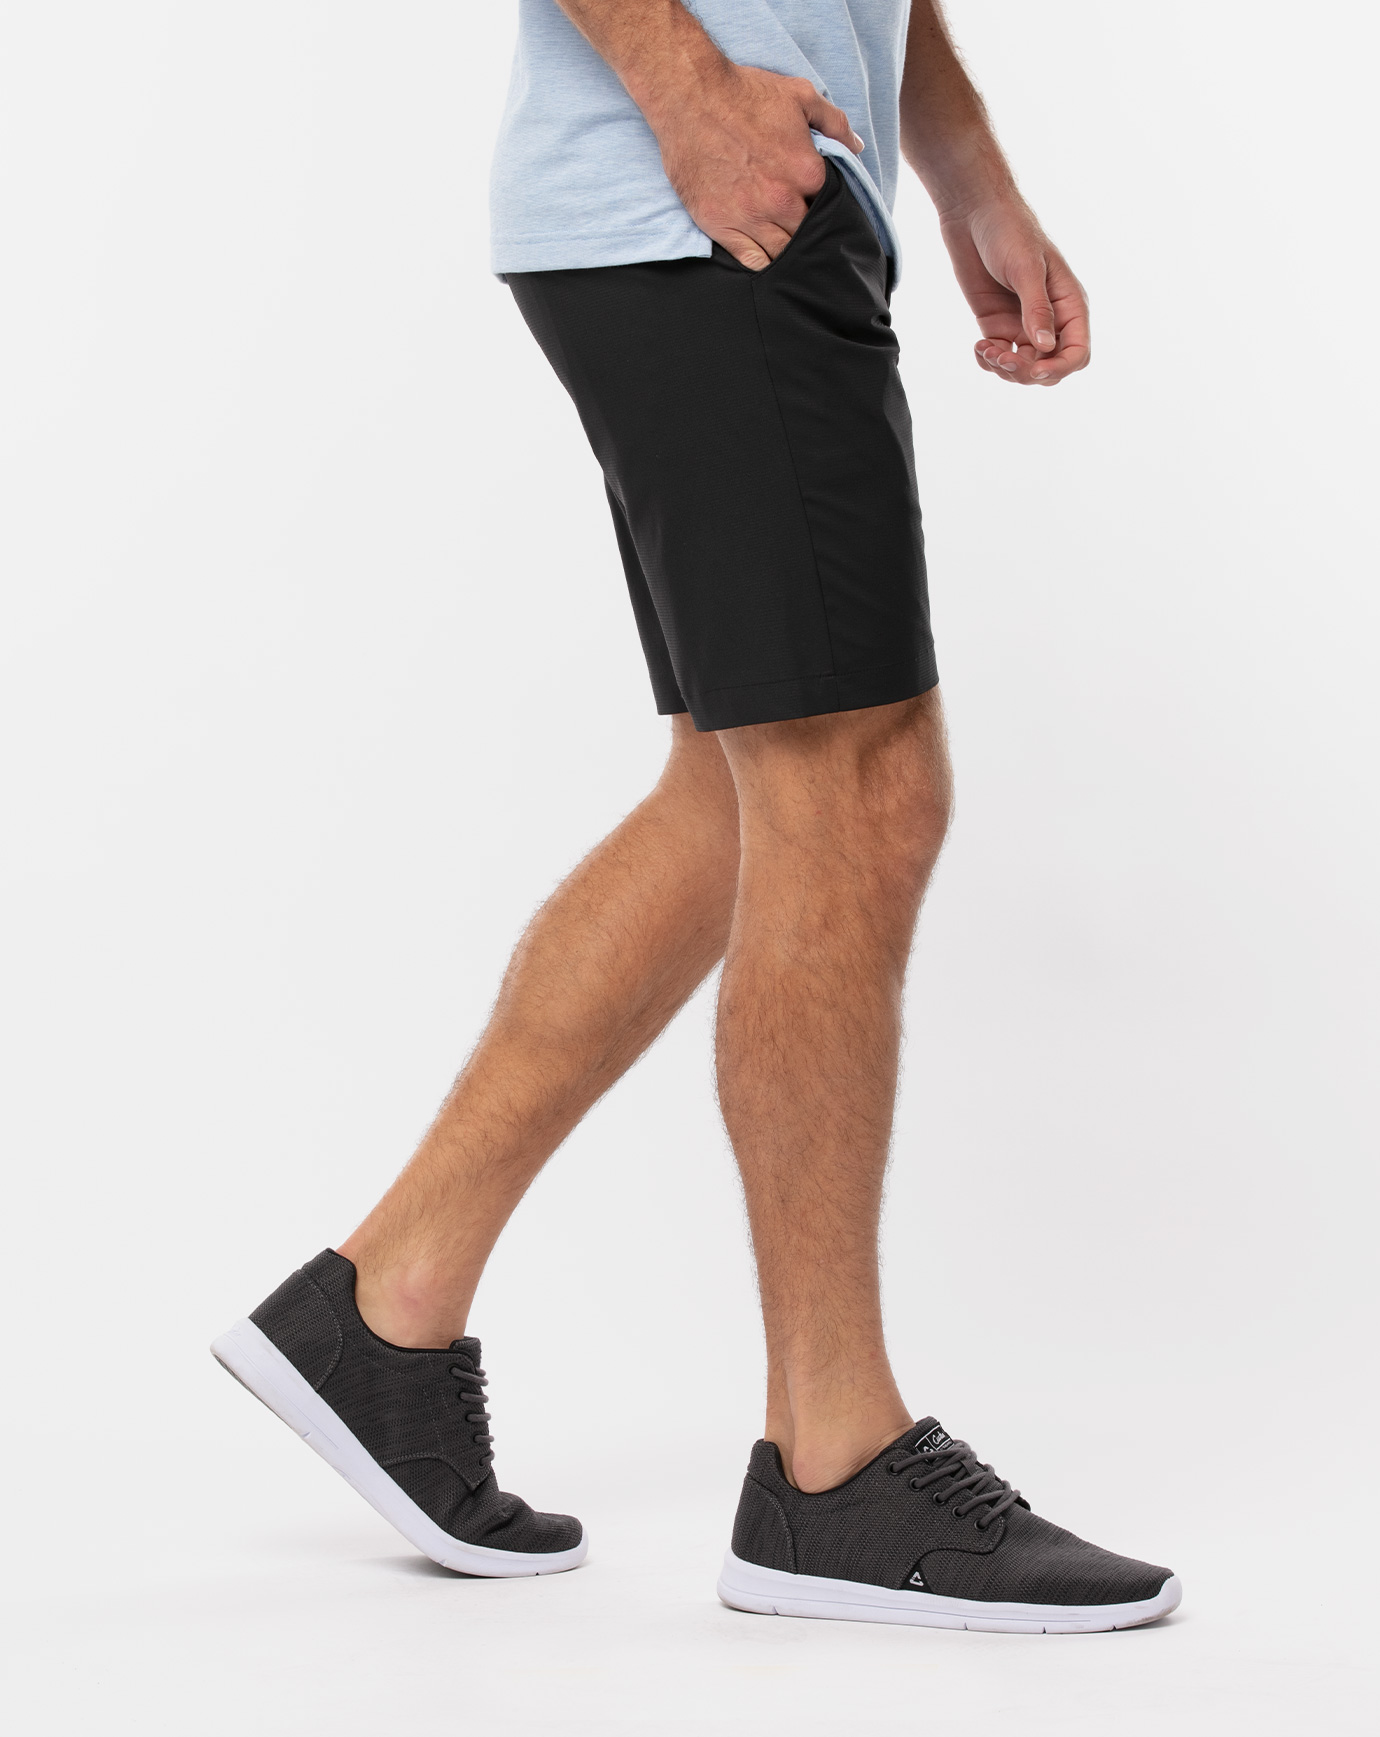 Supreme 2019 Jogger Shorts - Orange, 11.75 Rise Shorts, Clothing